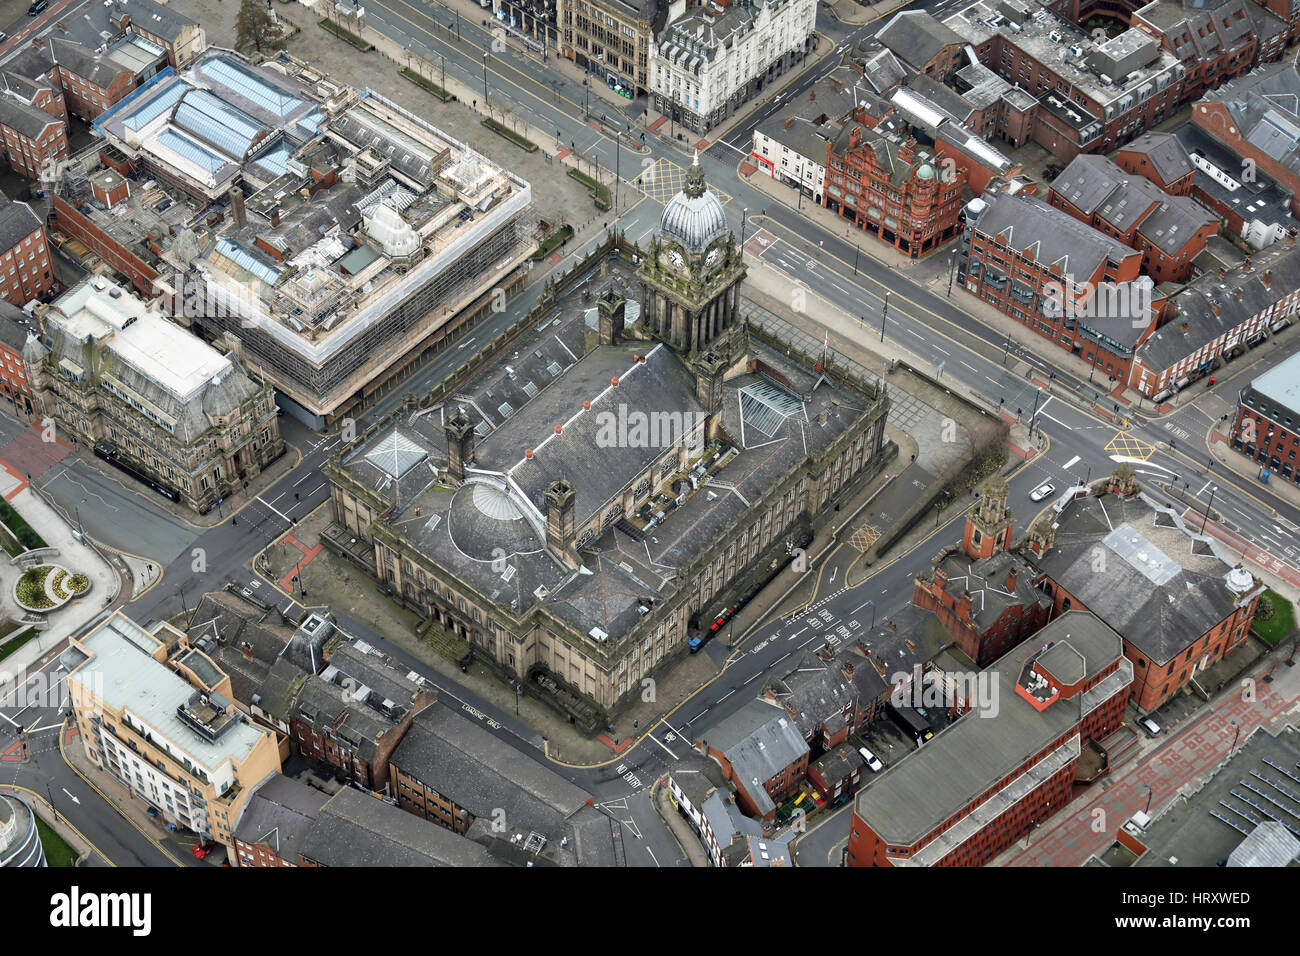 Vue aérienne de l'Hôtel de ville de Leeds, West Yorkshire, Royaume-Uni Banque D'Images